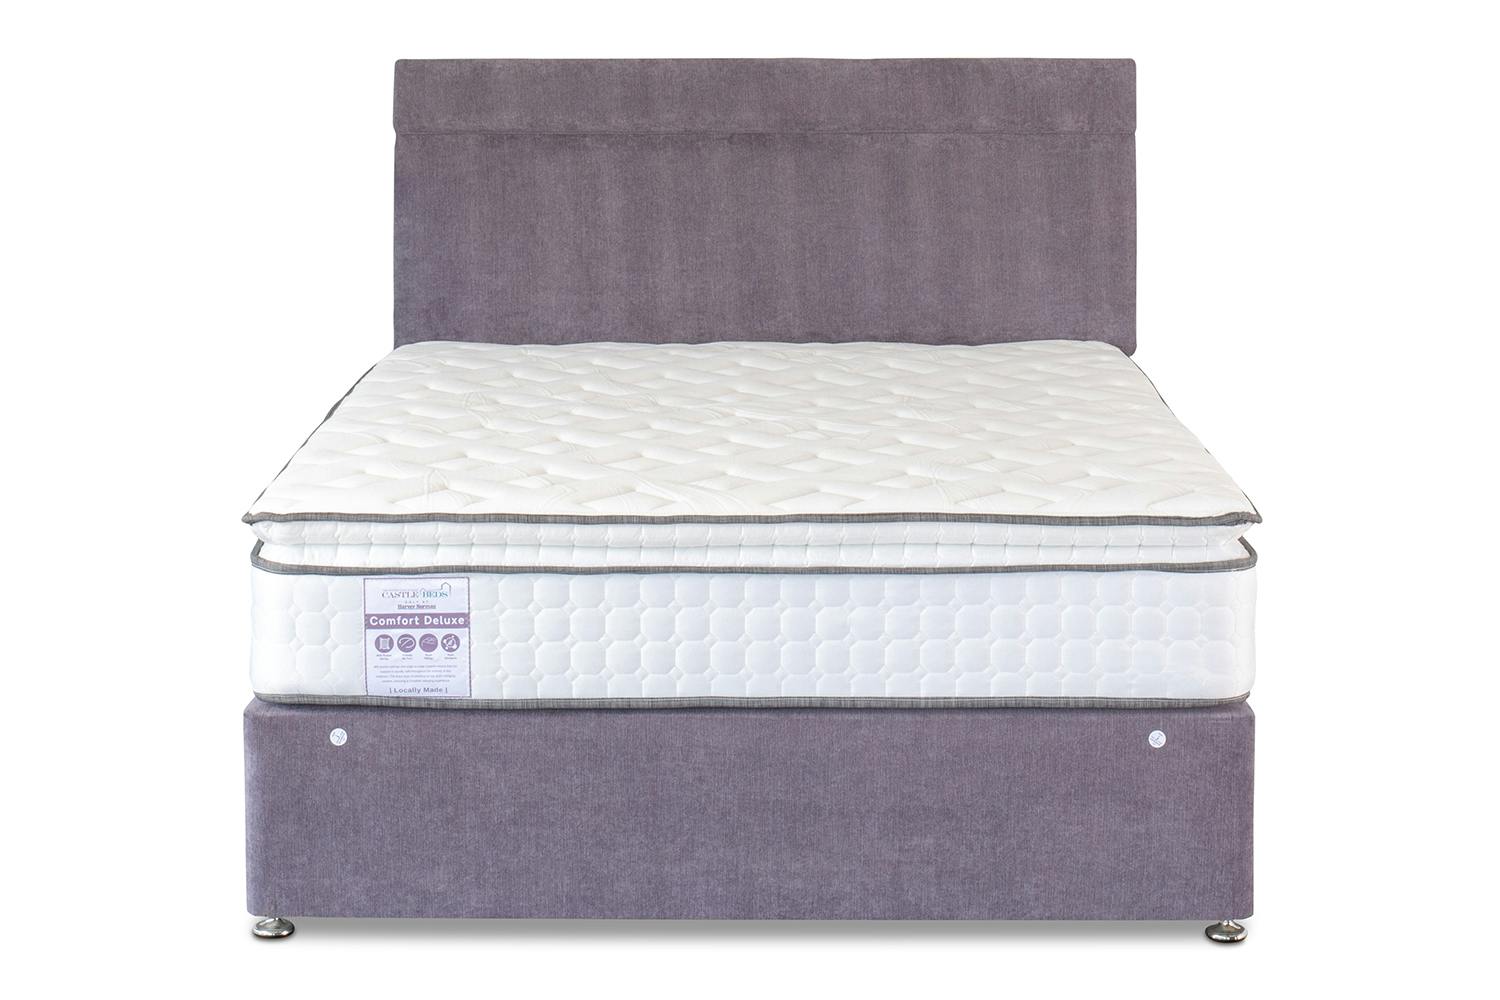 comfort king mattress prices